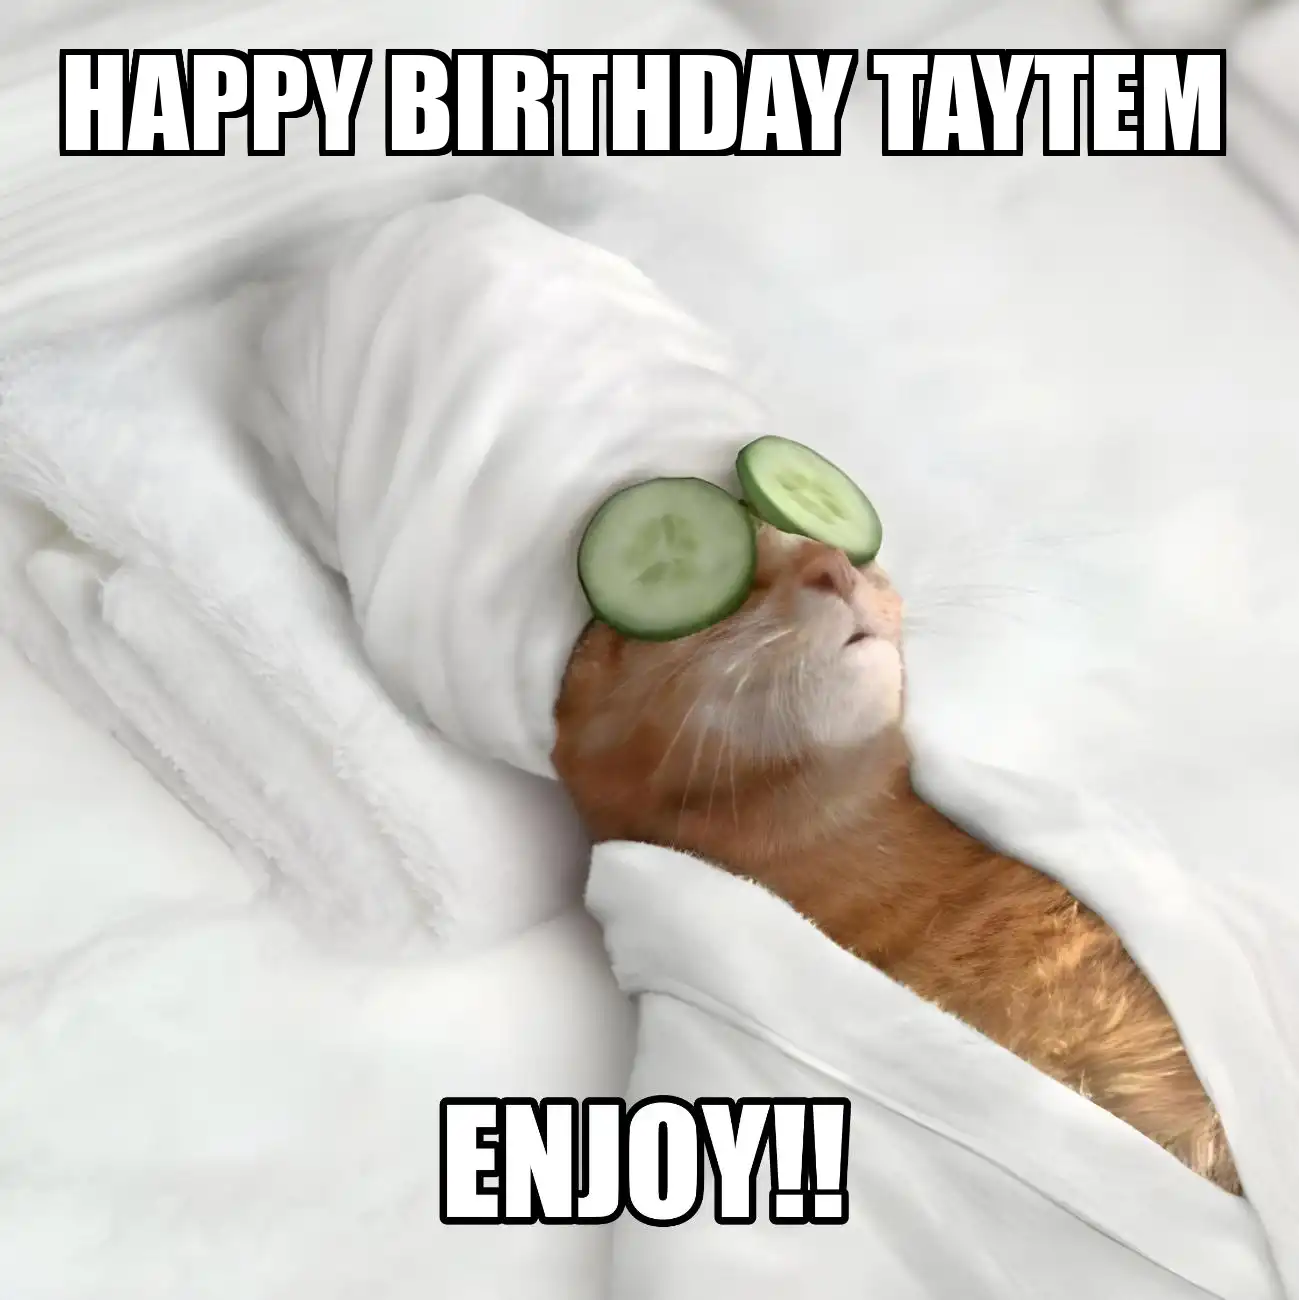 Happy Birthday Taytem Enjoy Cat Meme